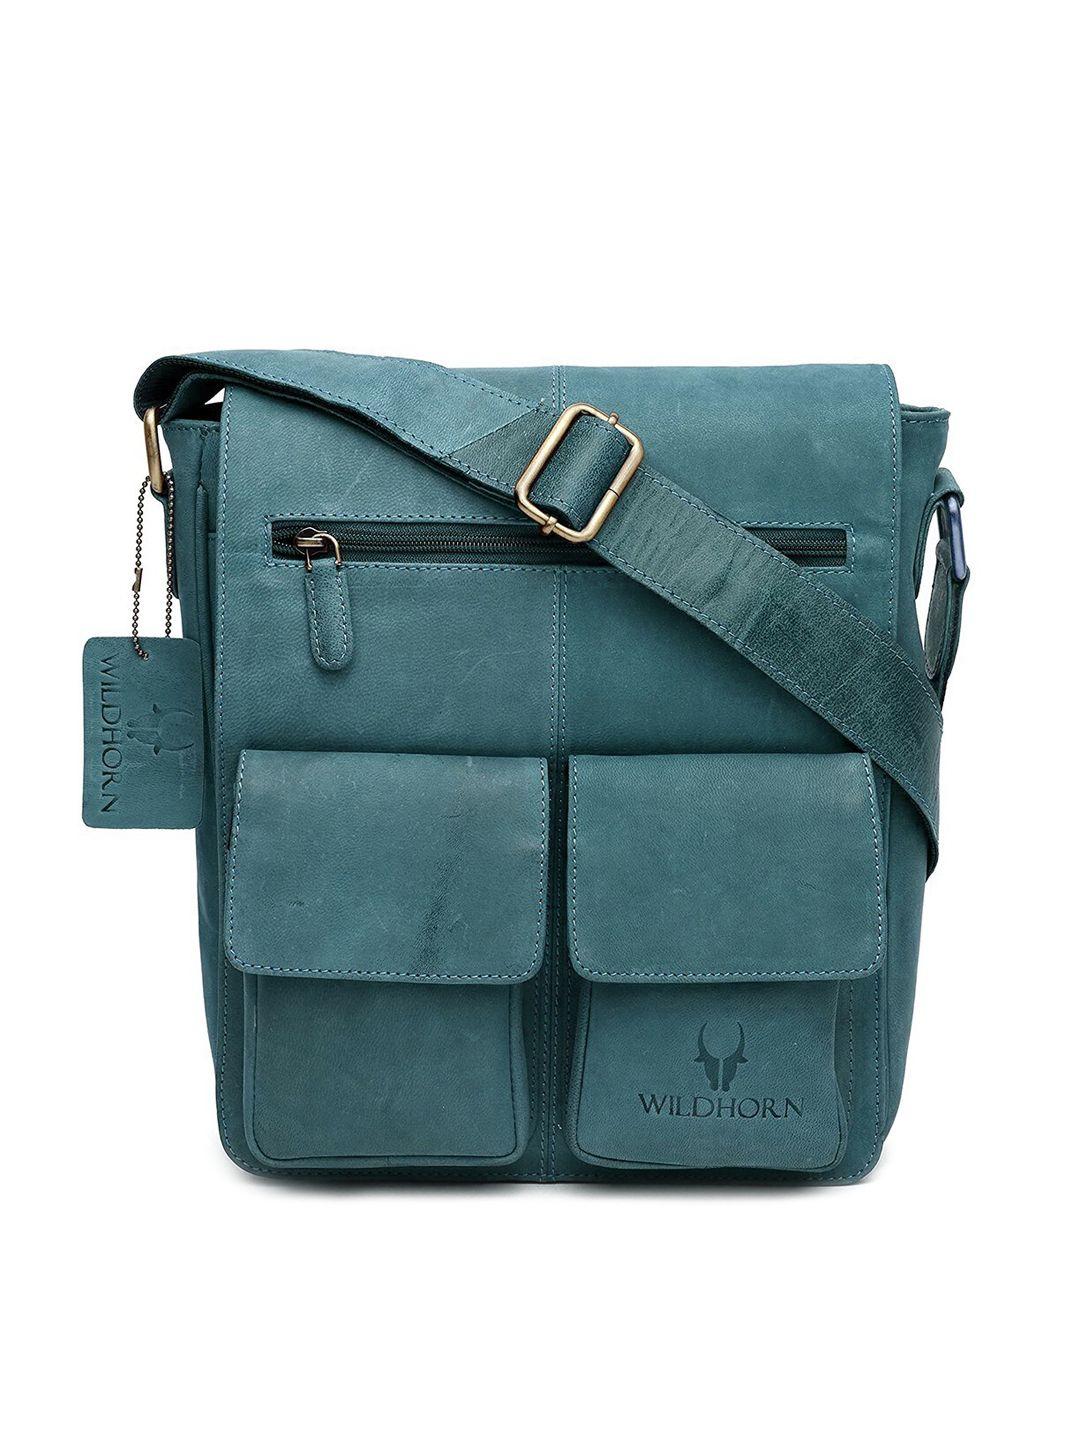 wildhorn blue leather structured sling bag